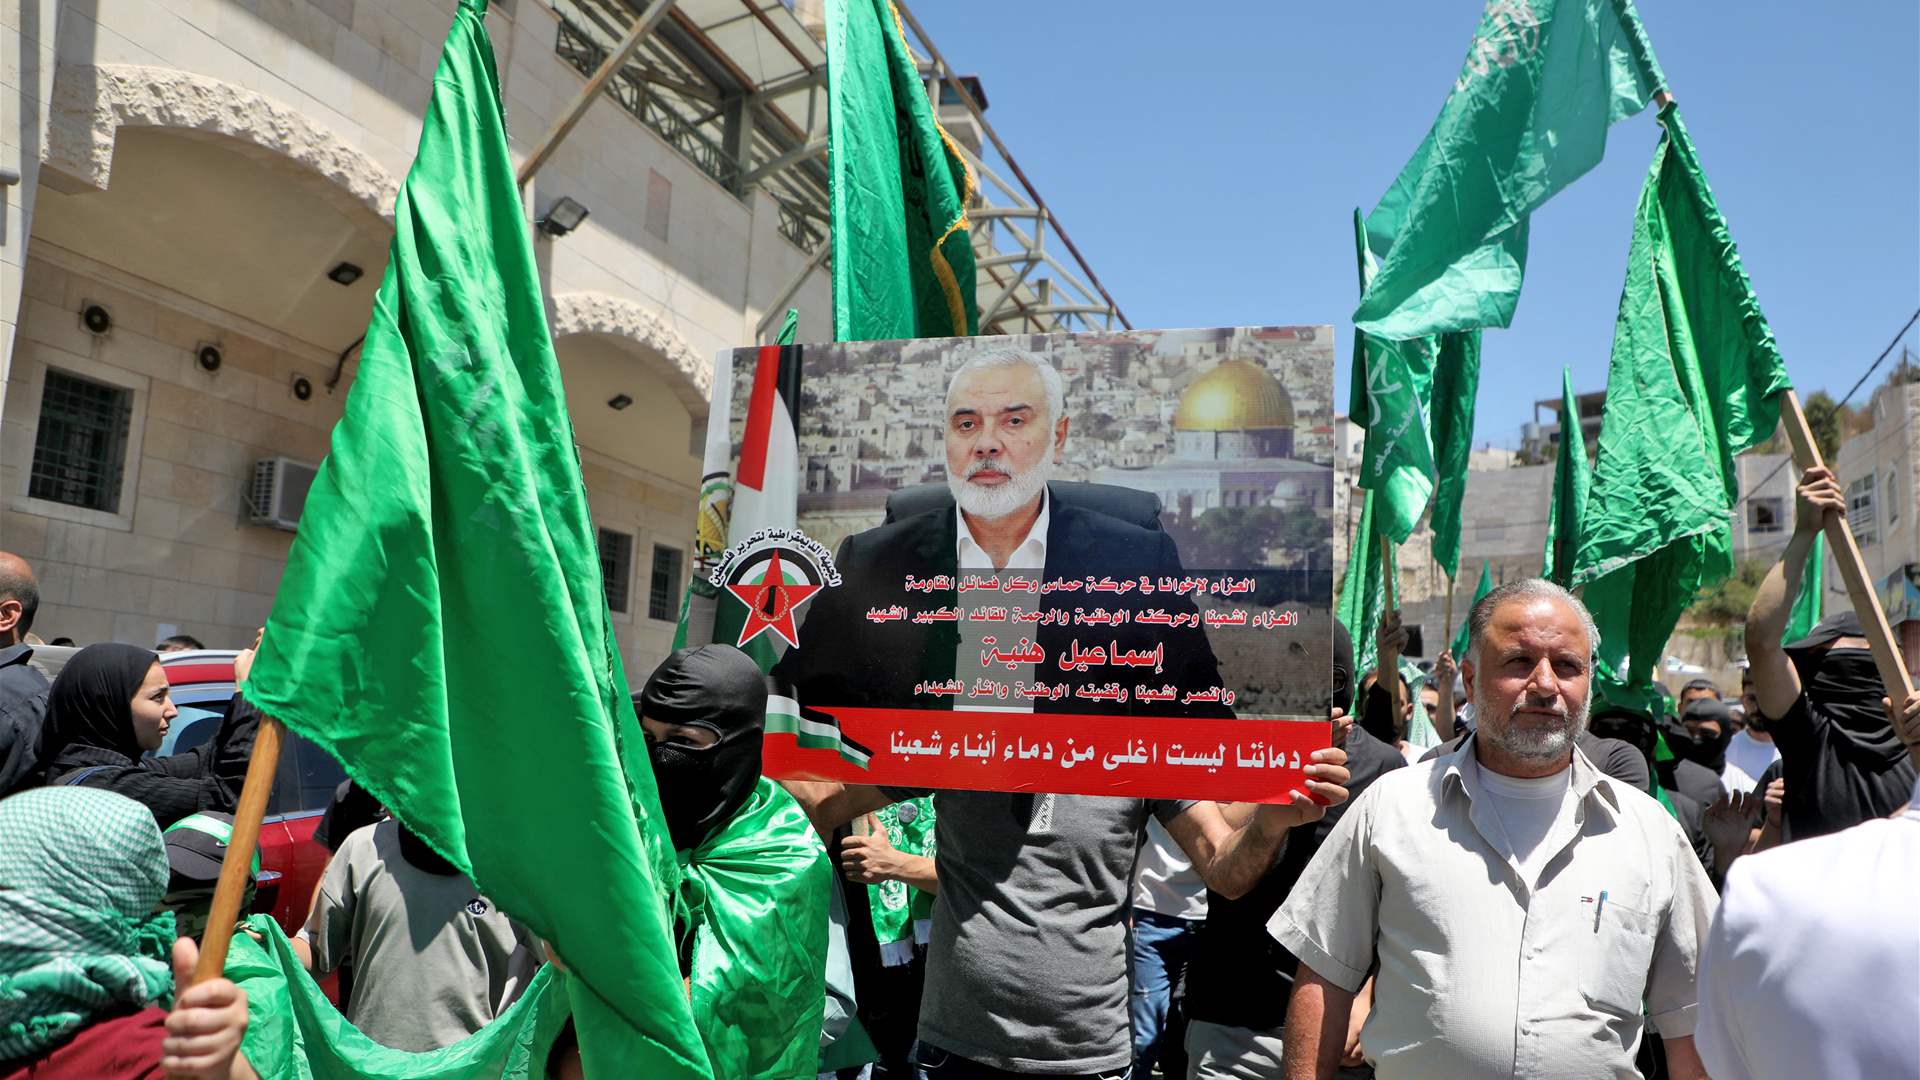 EU calls for &#39;maximum restraint&#39; after Hamas chief killing